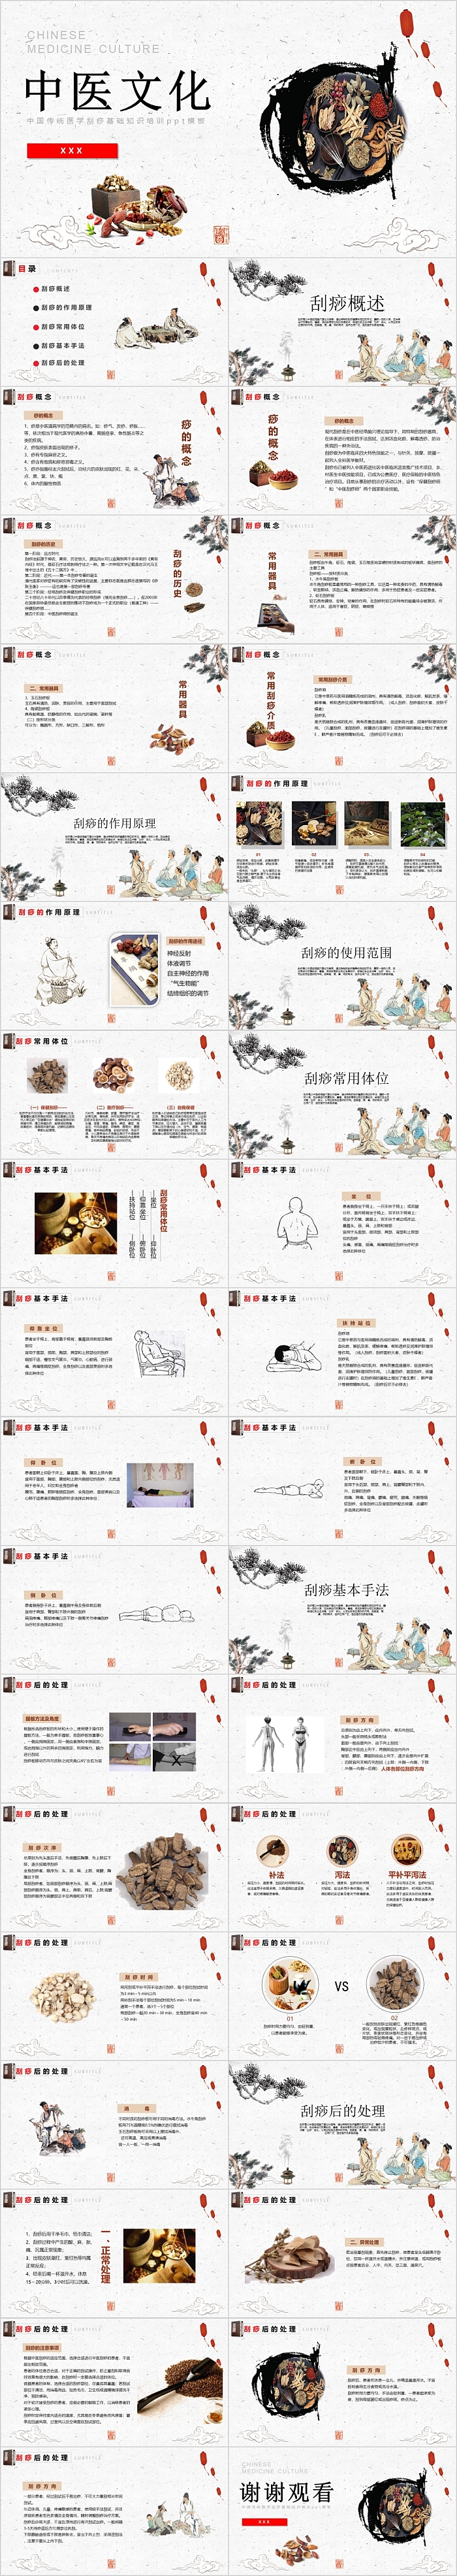 传统中国风中医文化模板